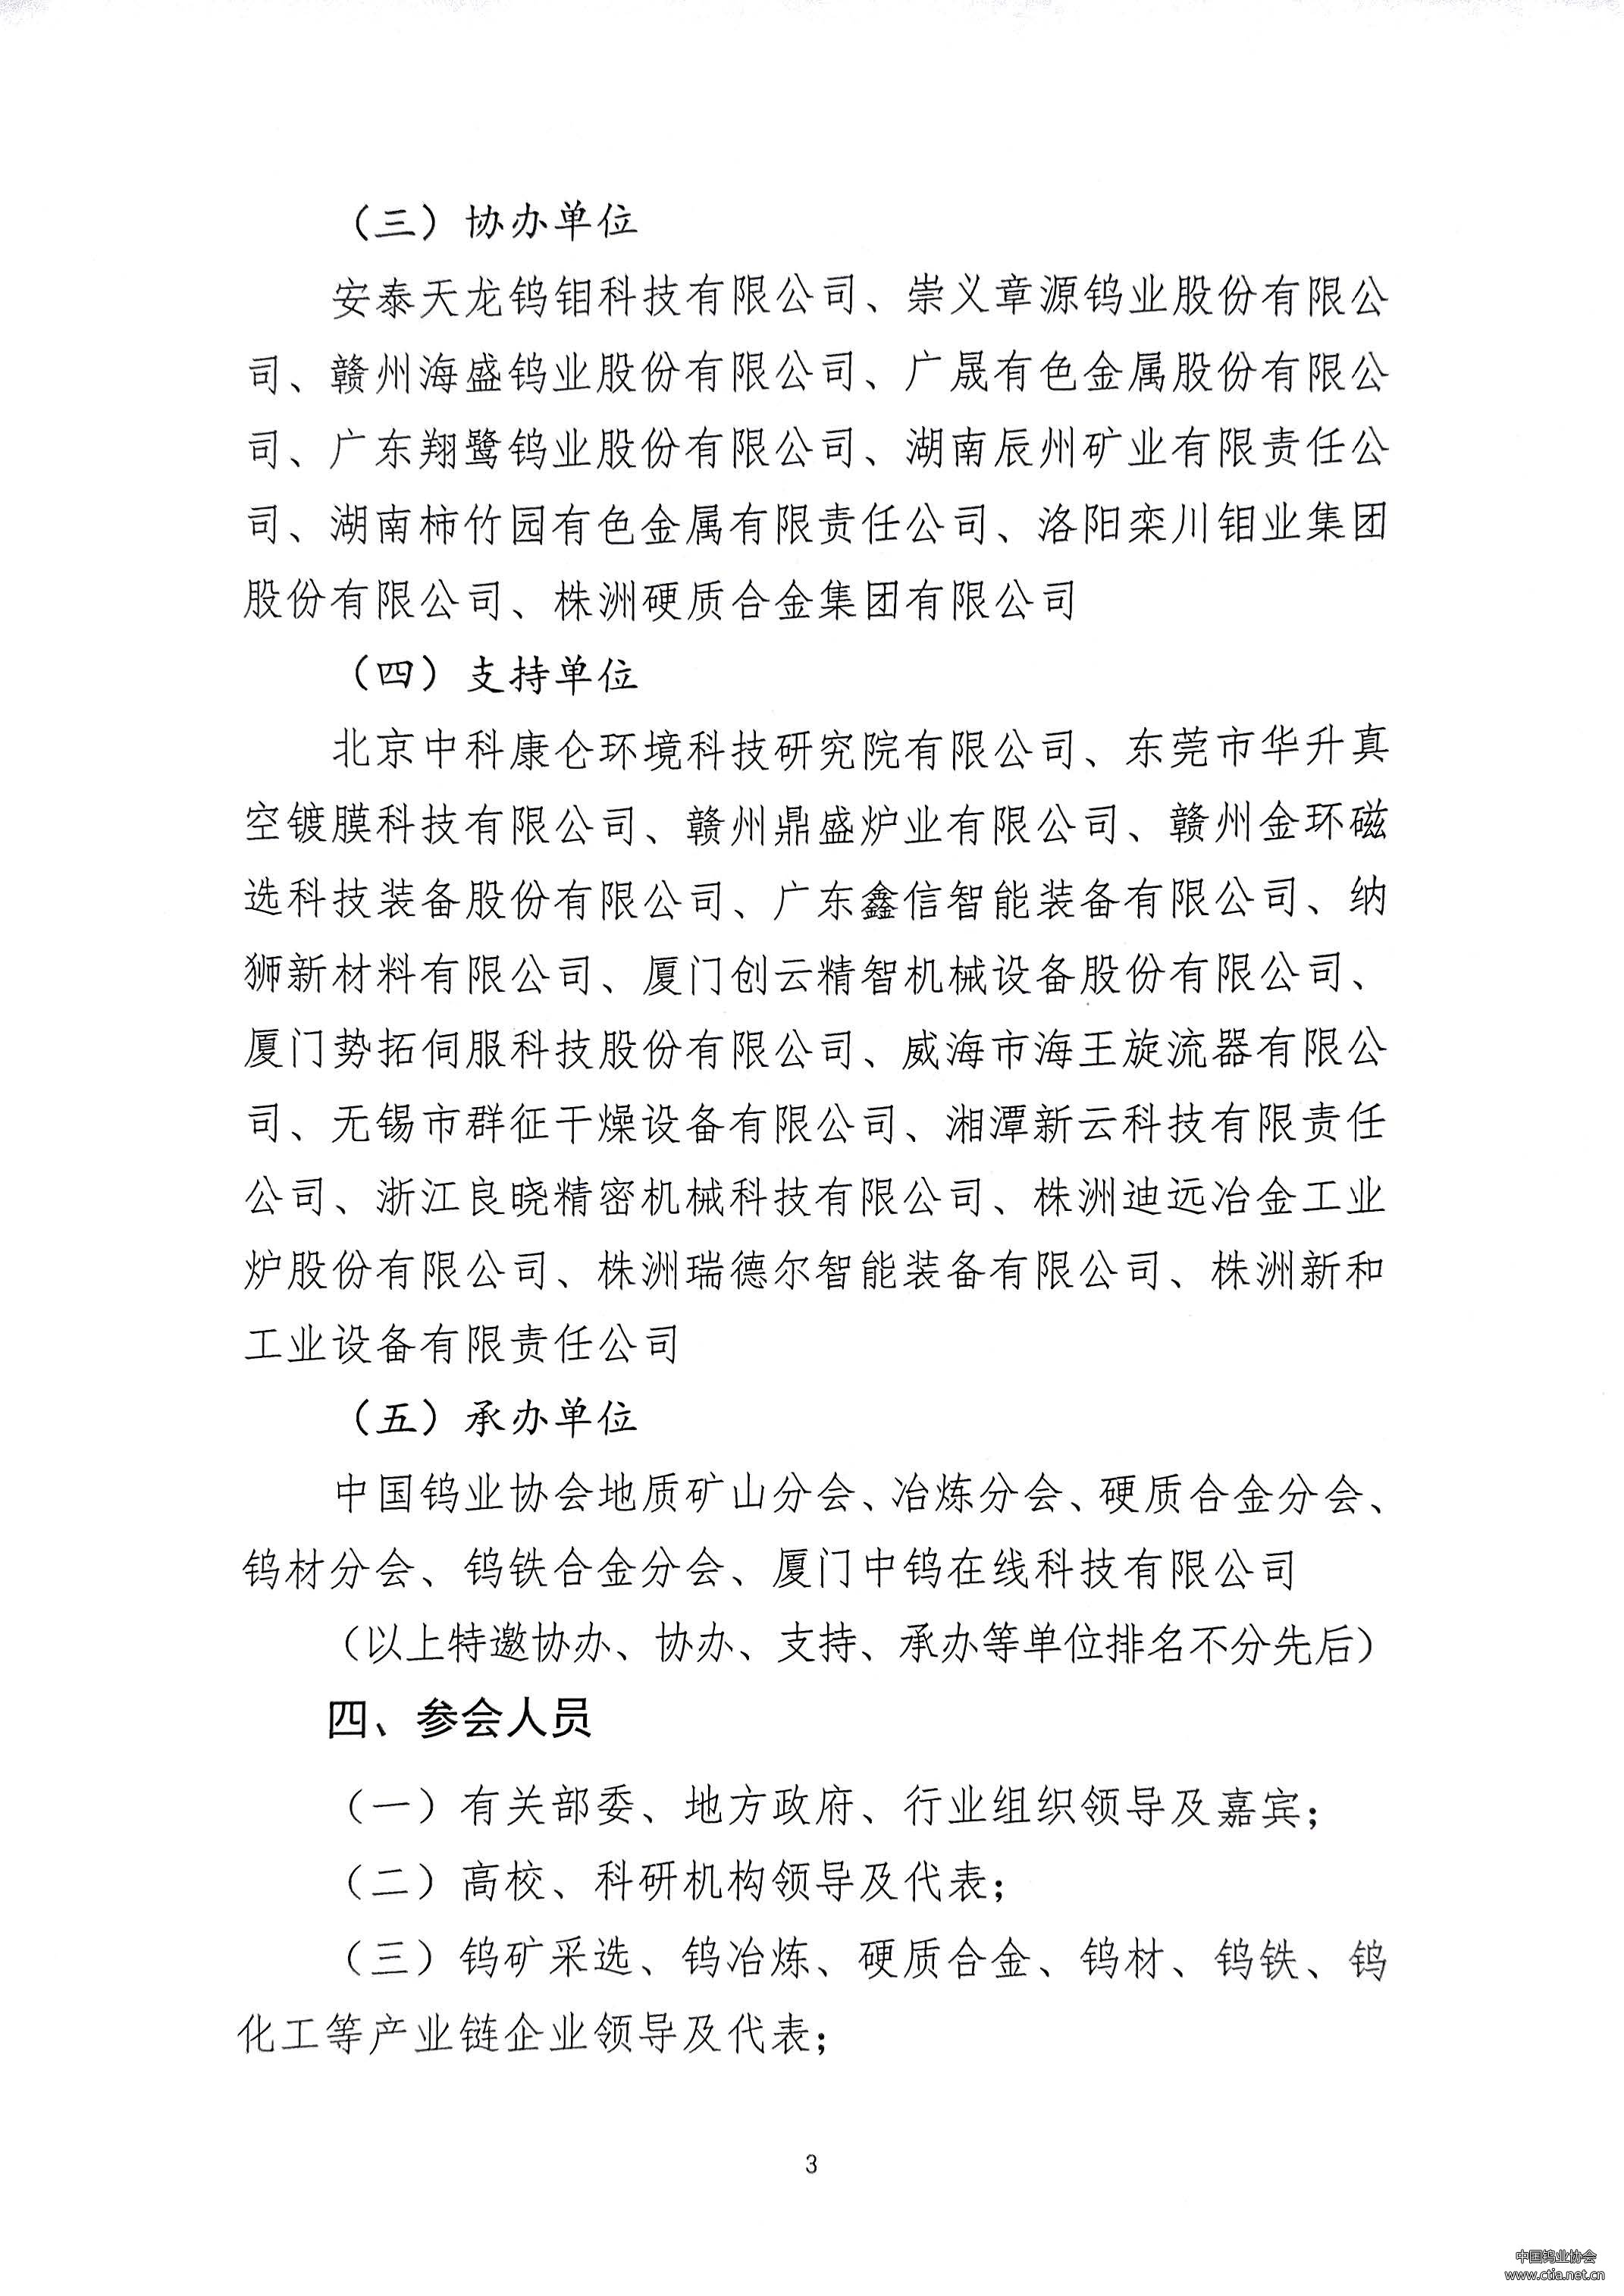 关于“中国钨工业装备论坛”延期召开的通知